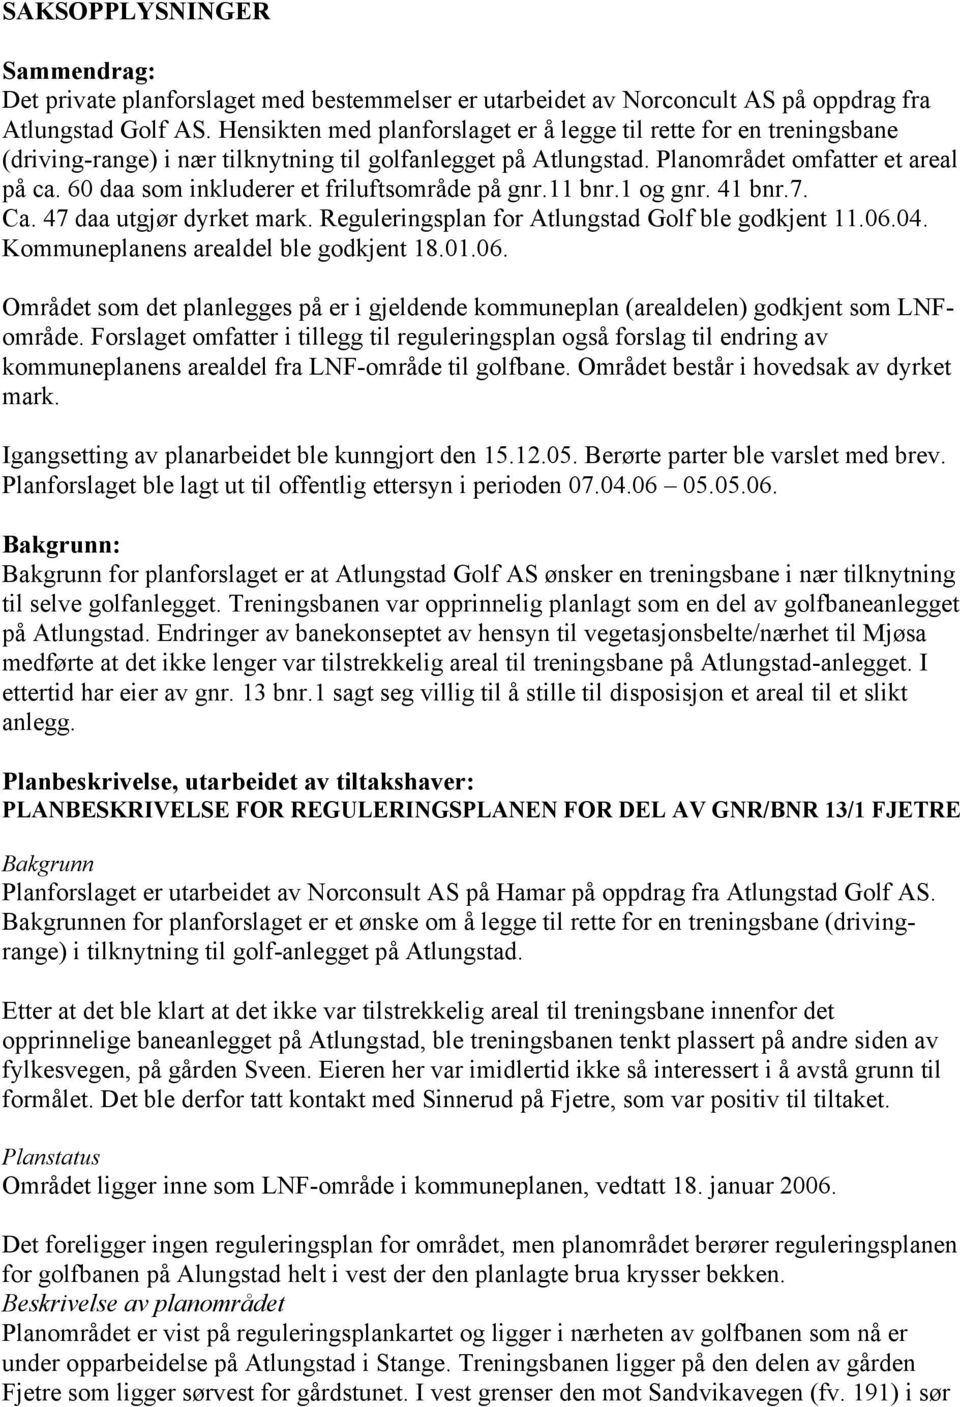 60 daa som inkluderer et friluftsområde på gnr.11 bnr.1 og gnr. 41 bnr.7. Ca. 47 daa utgjør dyrket mark. Reguleringsplan for Atlungstad Golf ble godkjent 11.06.04.